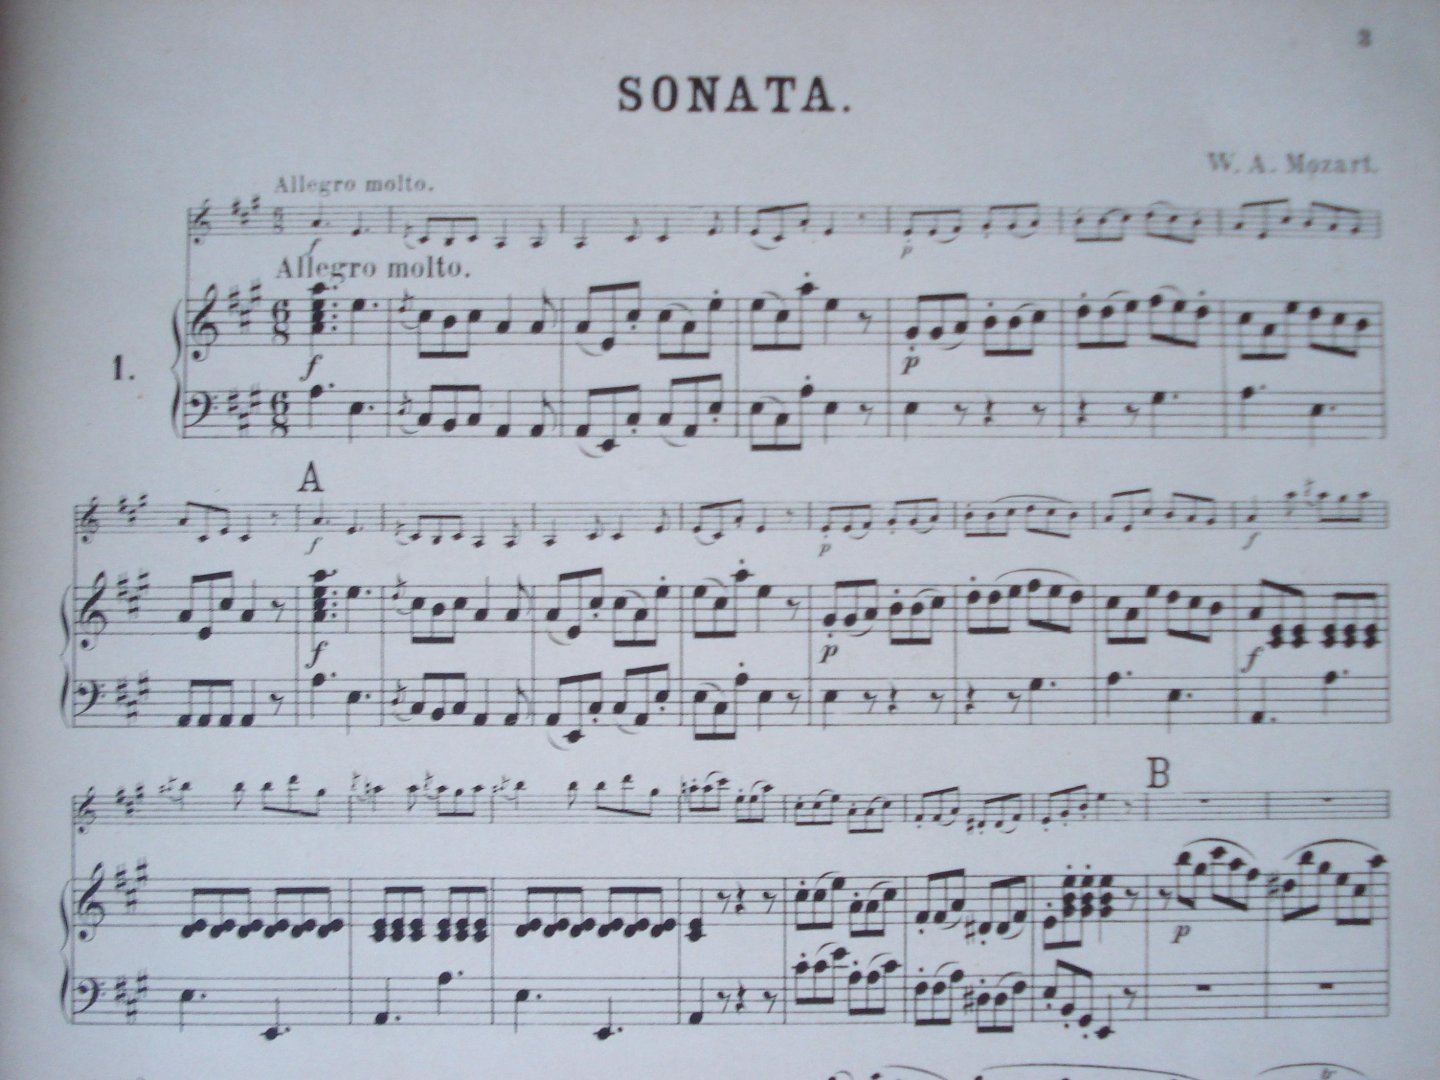 Mozart, Wolfgang Amadeus - Sonaten fur Pianoforte und Violine.